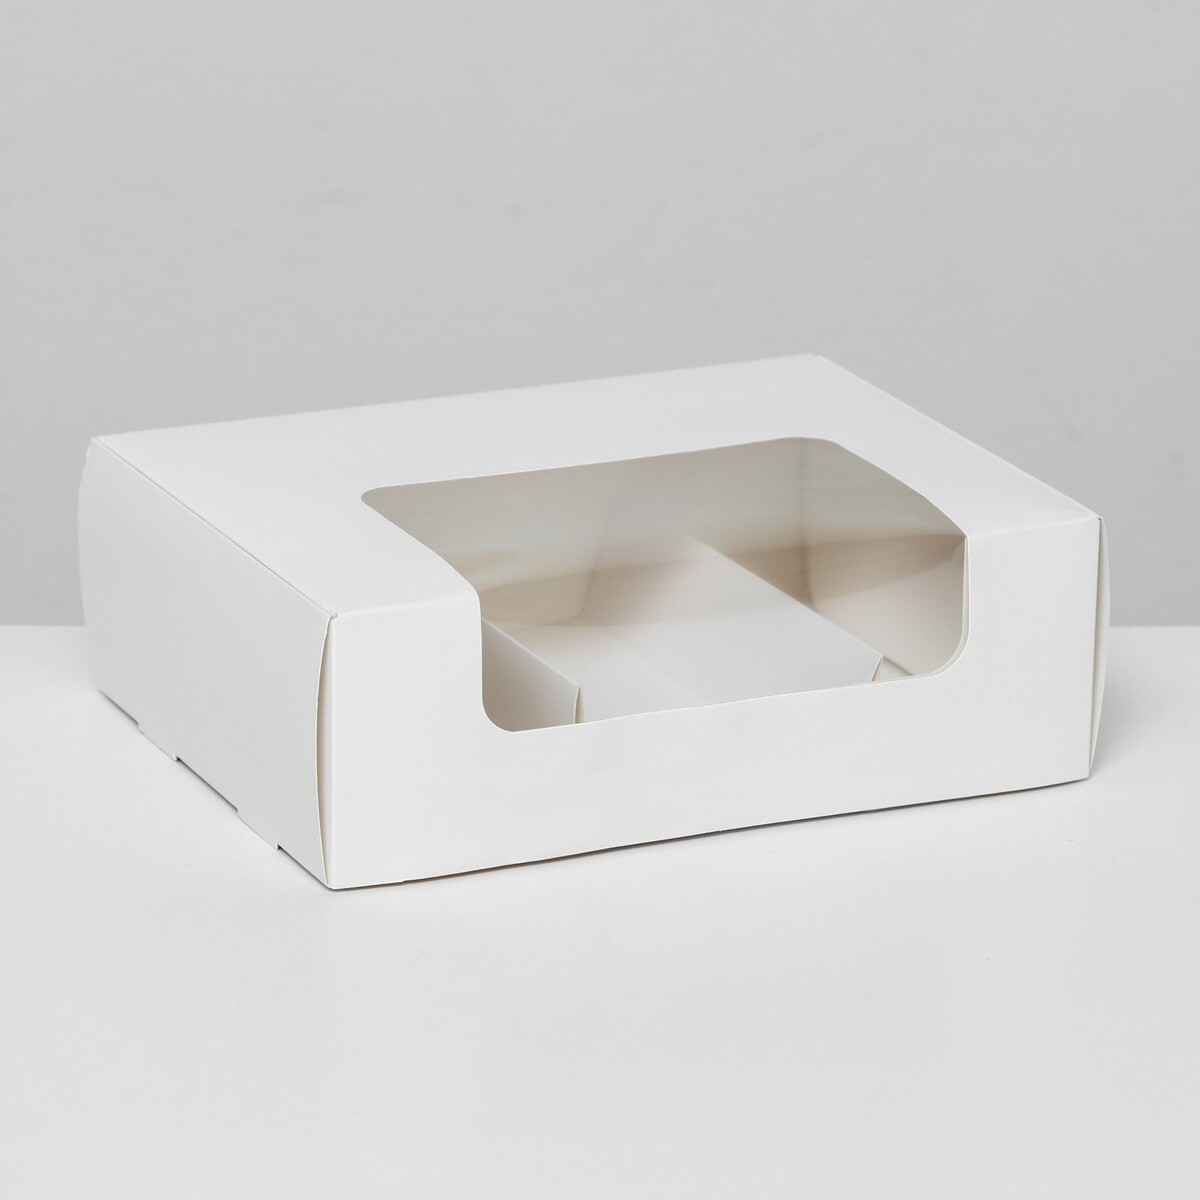 Коробка складная, под 3 эклера, белая, 20 x 15 x 6 см коробка складная под 5 эклеров голубой 25 х 15 х 6 6 см